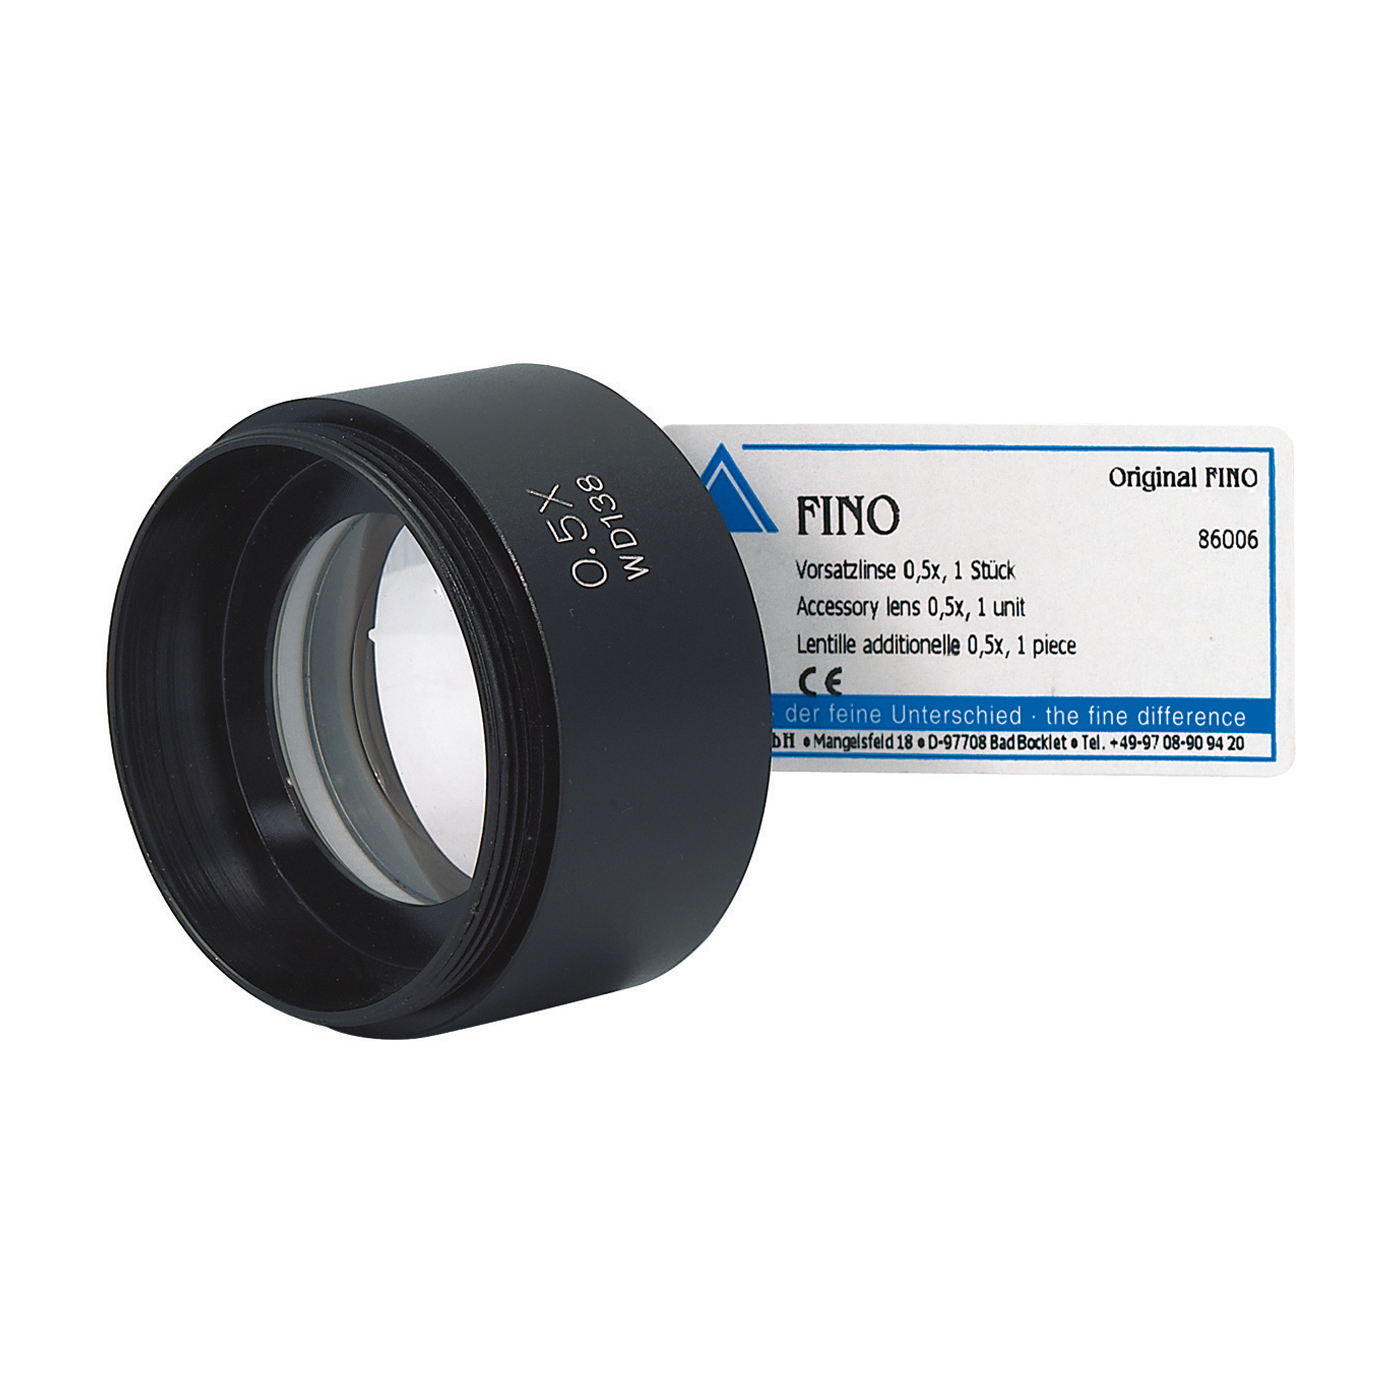 FINO Vorsatzlinse 0,5x - 1 Stück